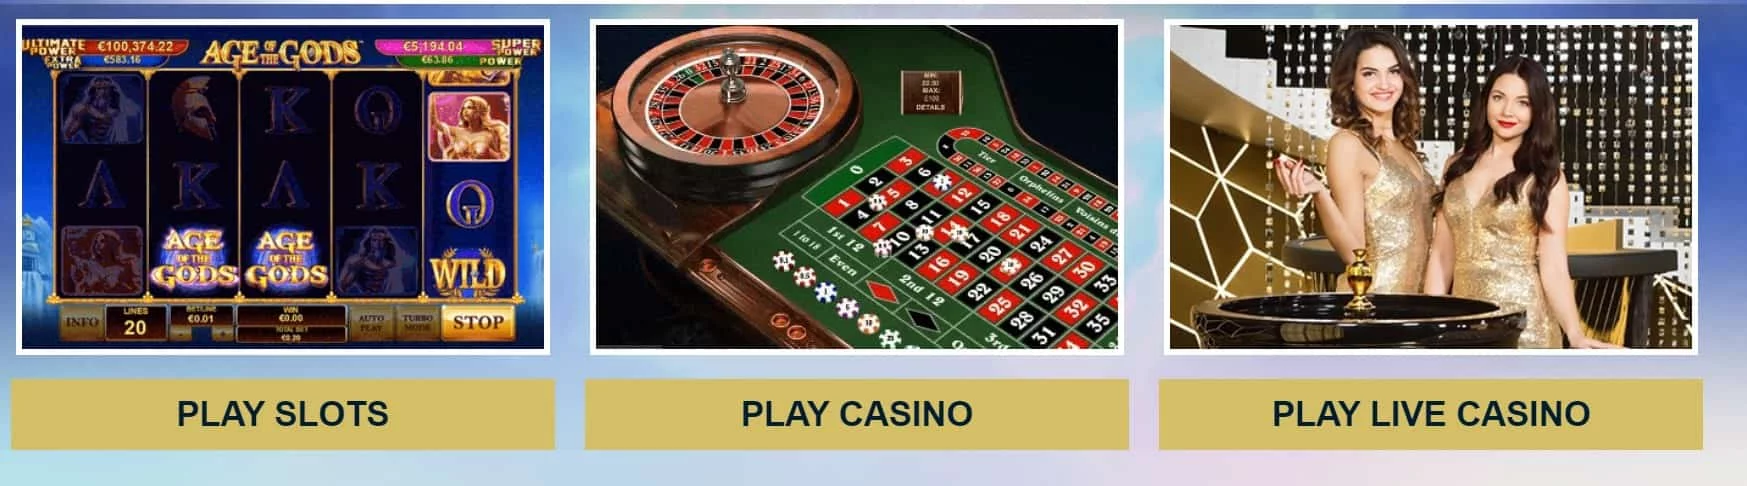 Europa Casino Games and Live Casino-min